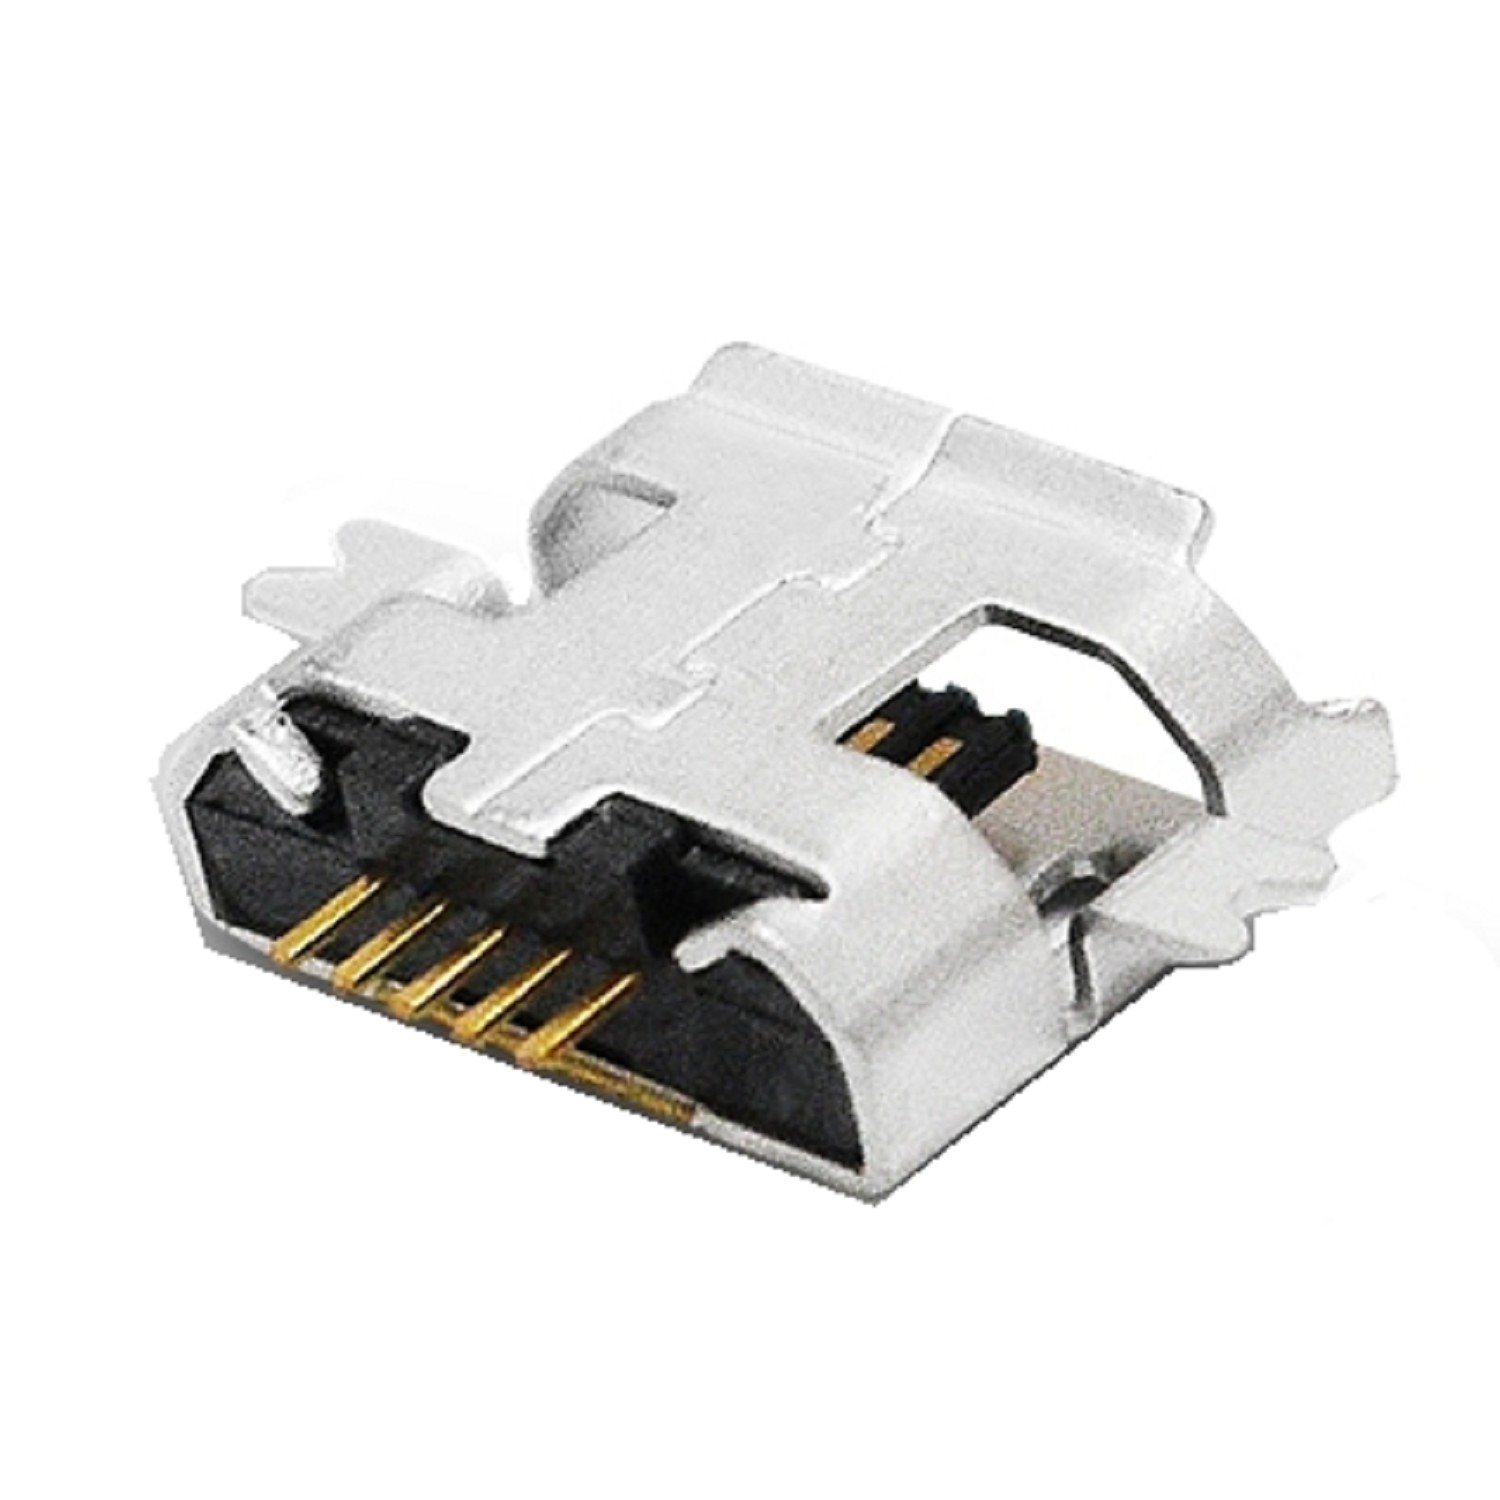 CONECTOR MICRO USB HEMBRA PARA SMARTPHONES Y TABLET (MONTAJE E)